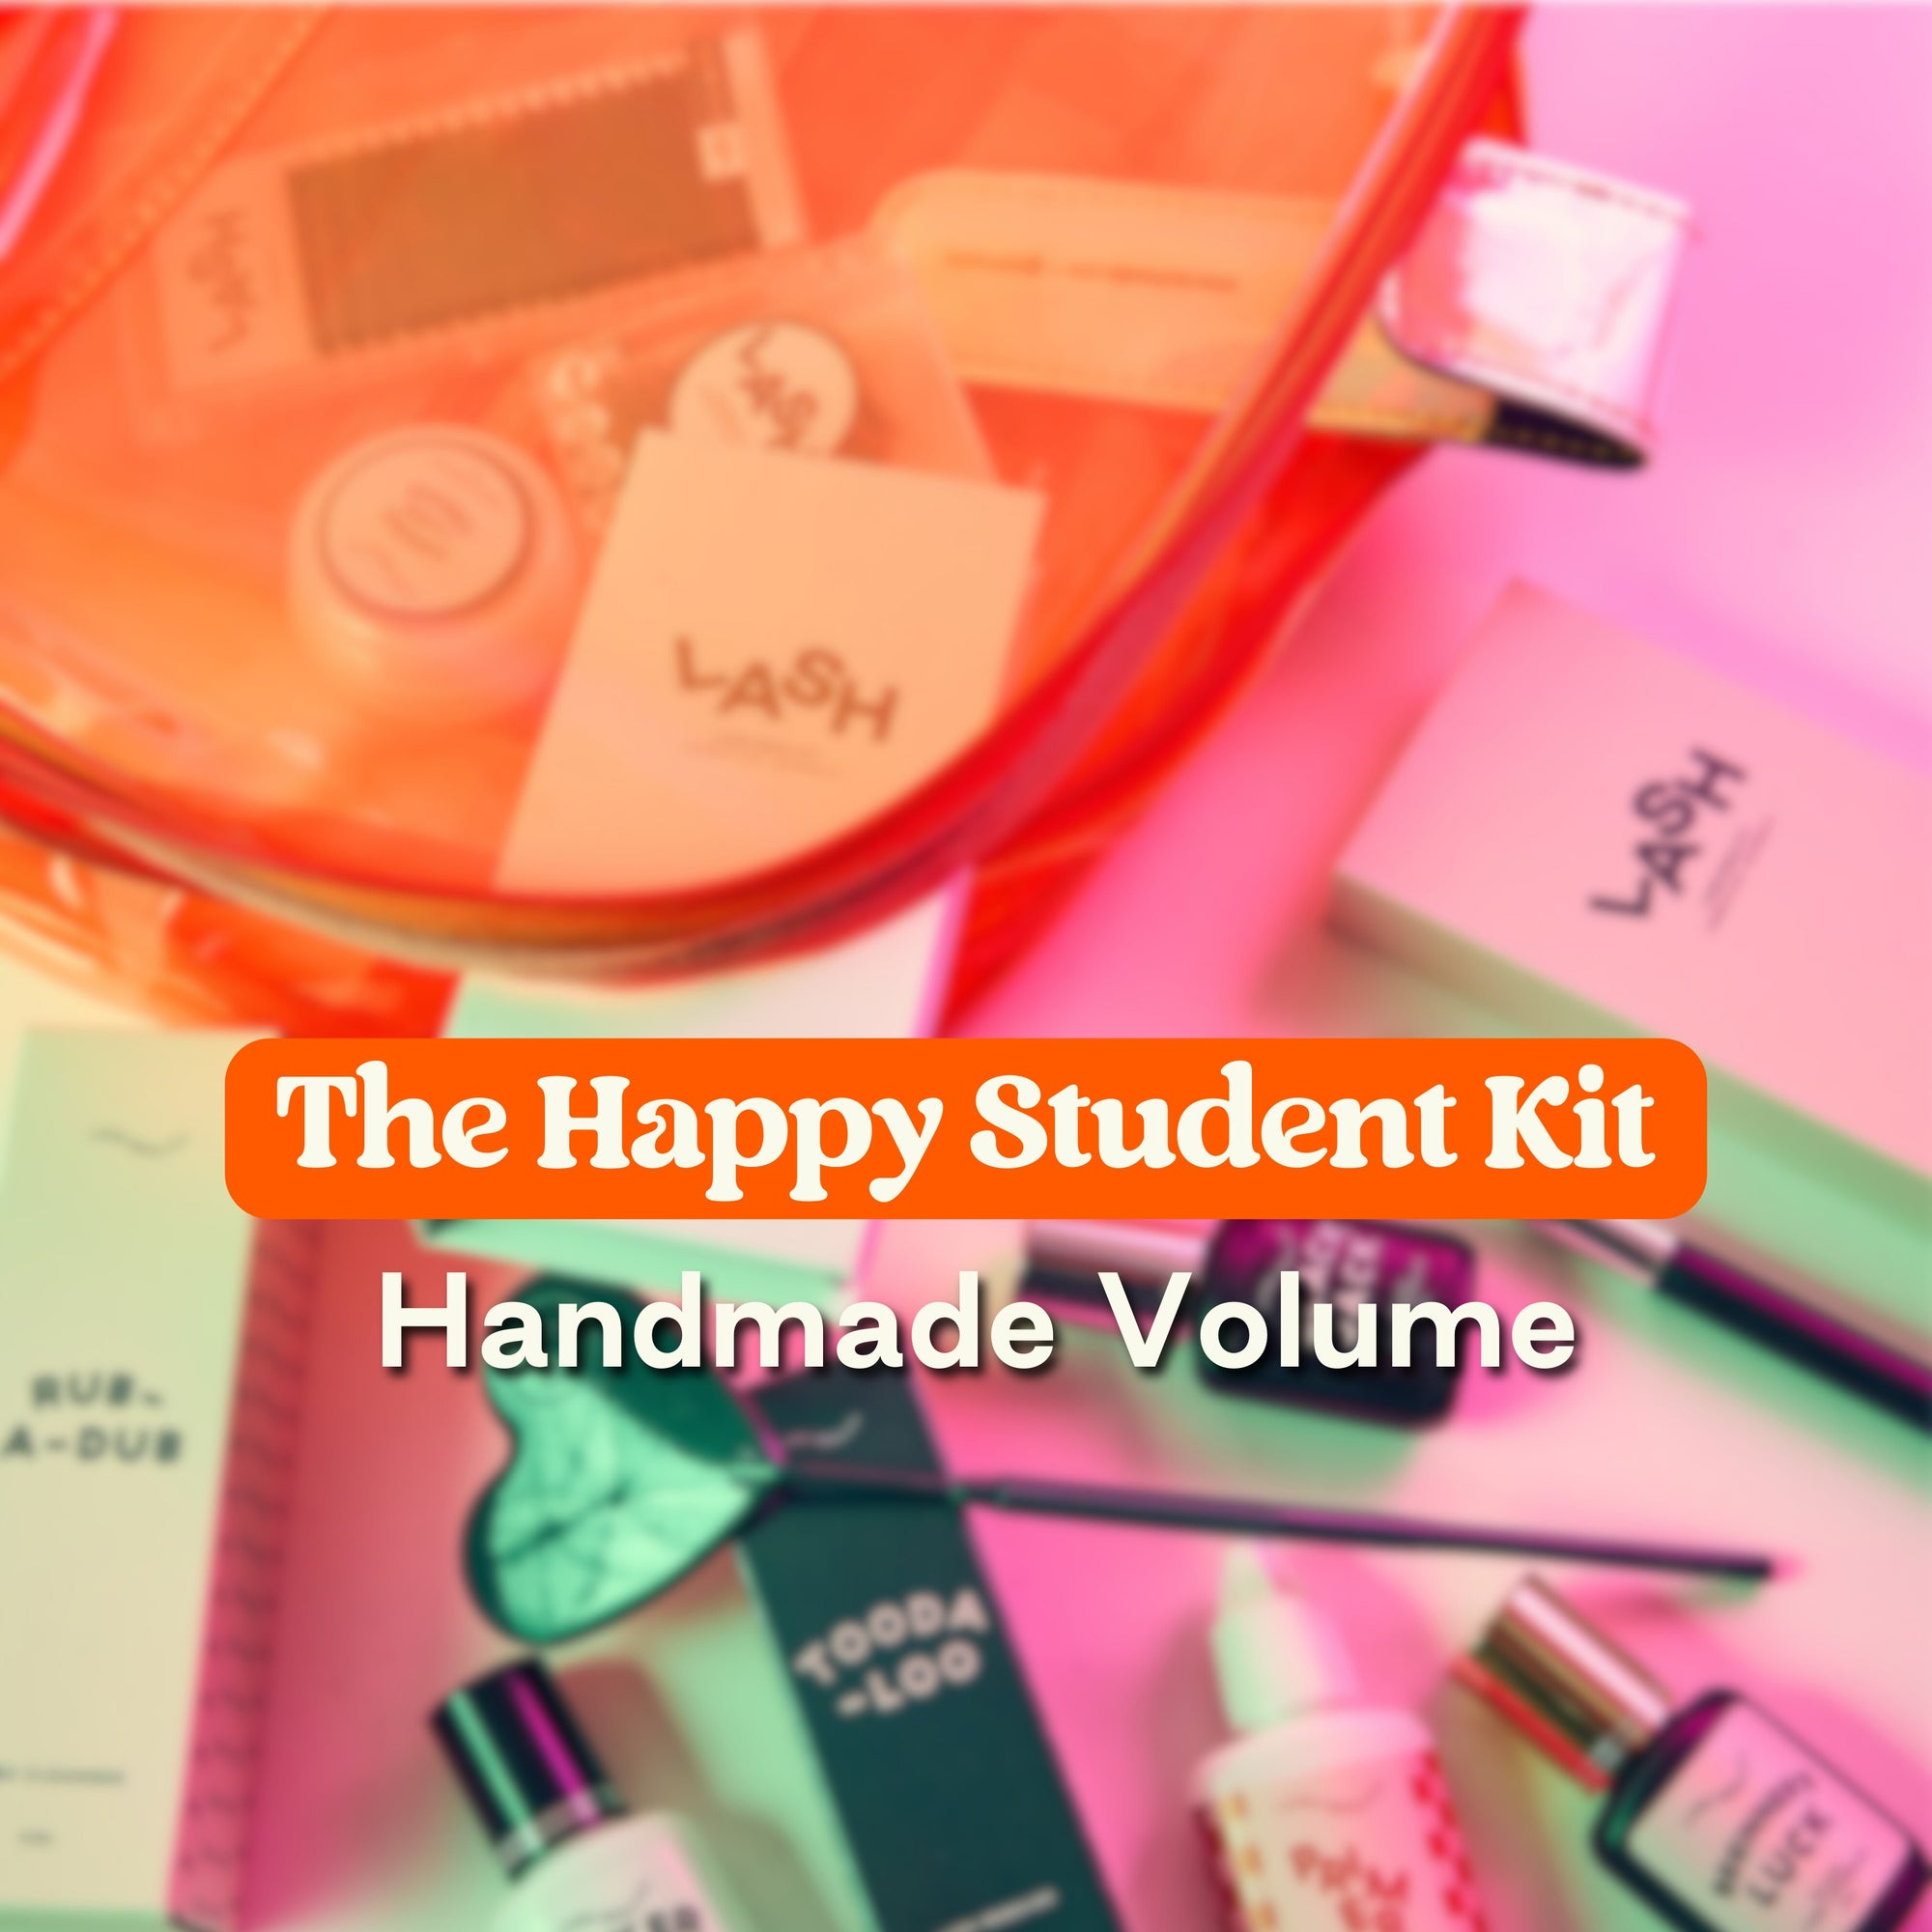 The Happy Student Volume Kit